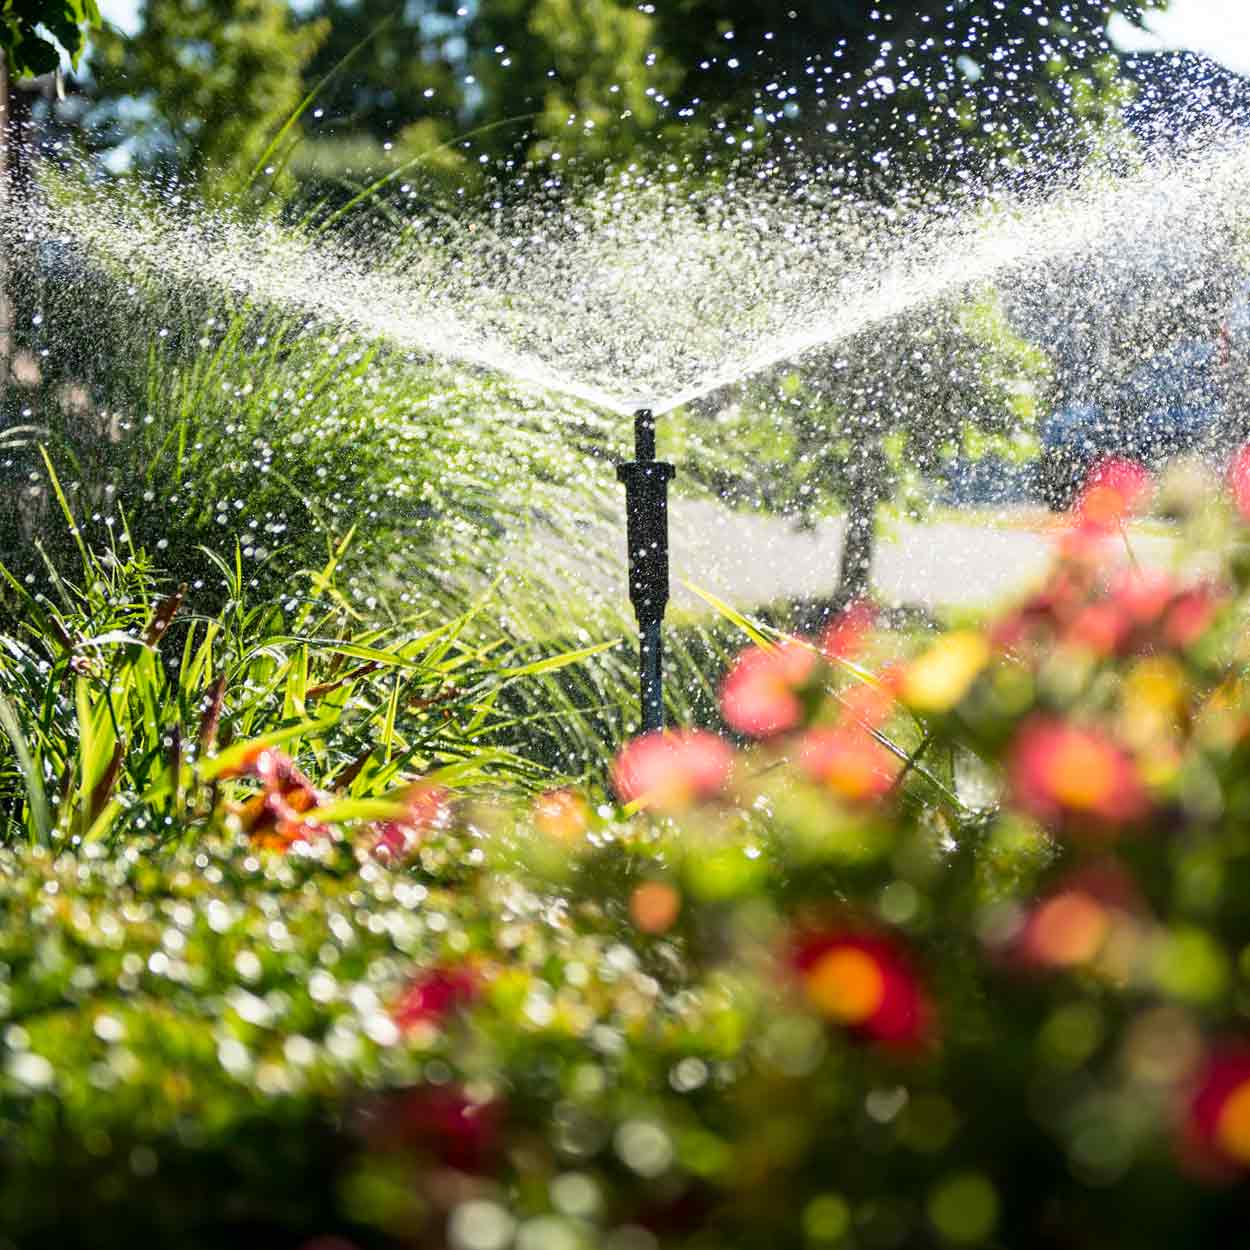 Zu sehen ist ein Bewässerungssystem mit kreisendem Strahl im blühenden Gartenbeet